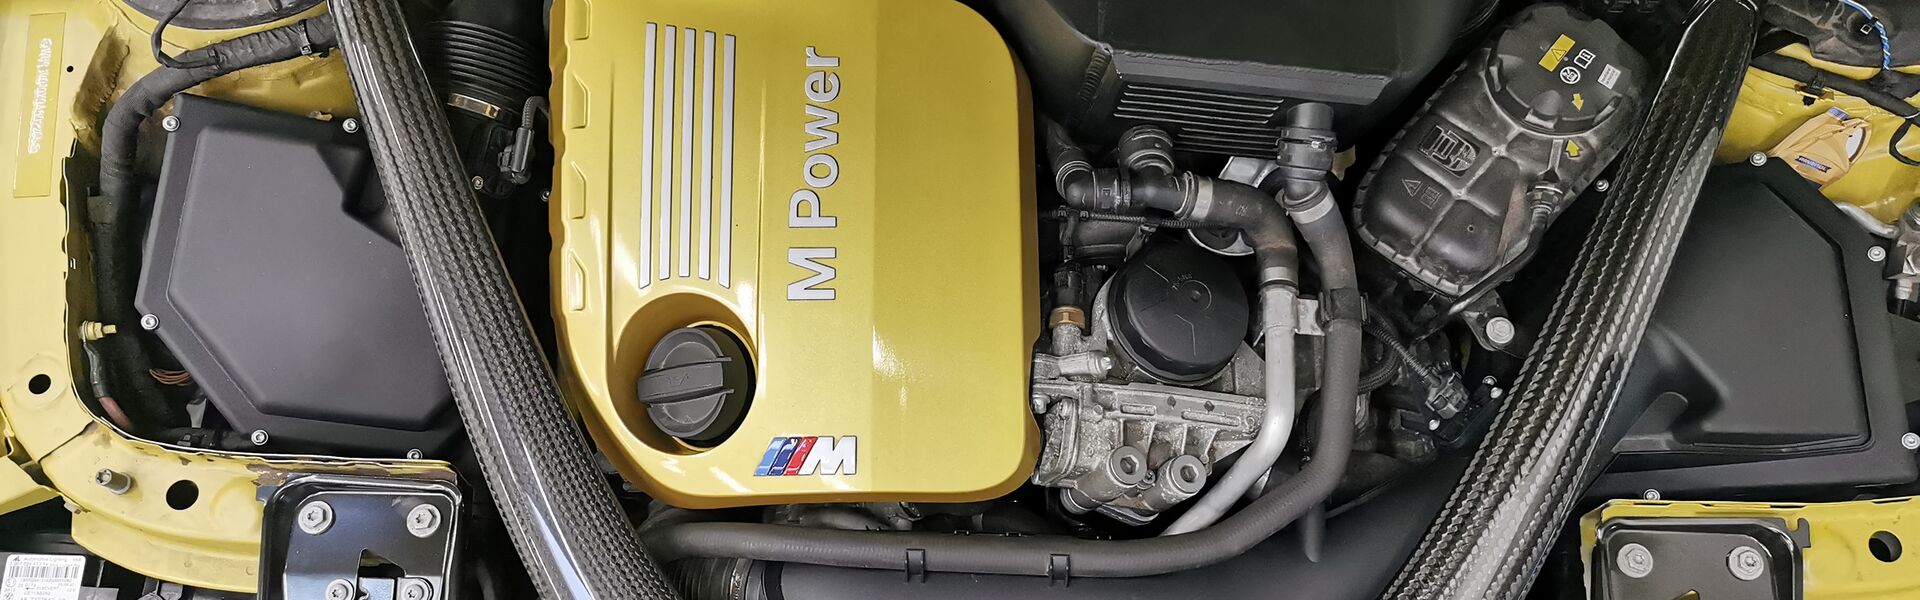 Engine Volkswagen Golf VII GTI FL Performance 180 kW